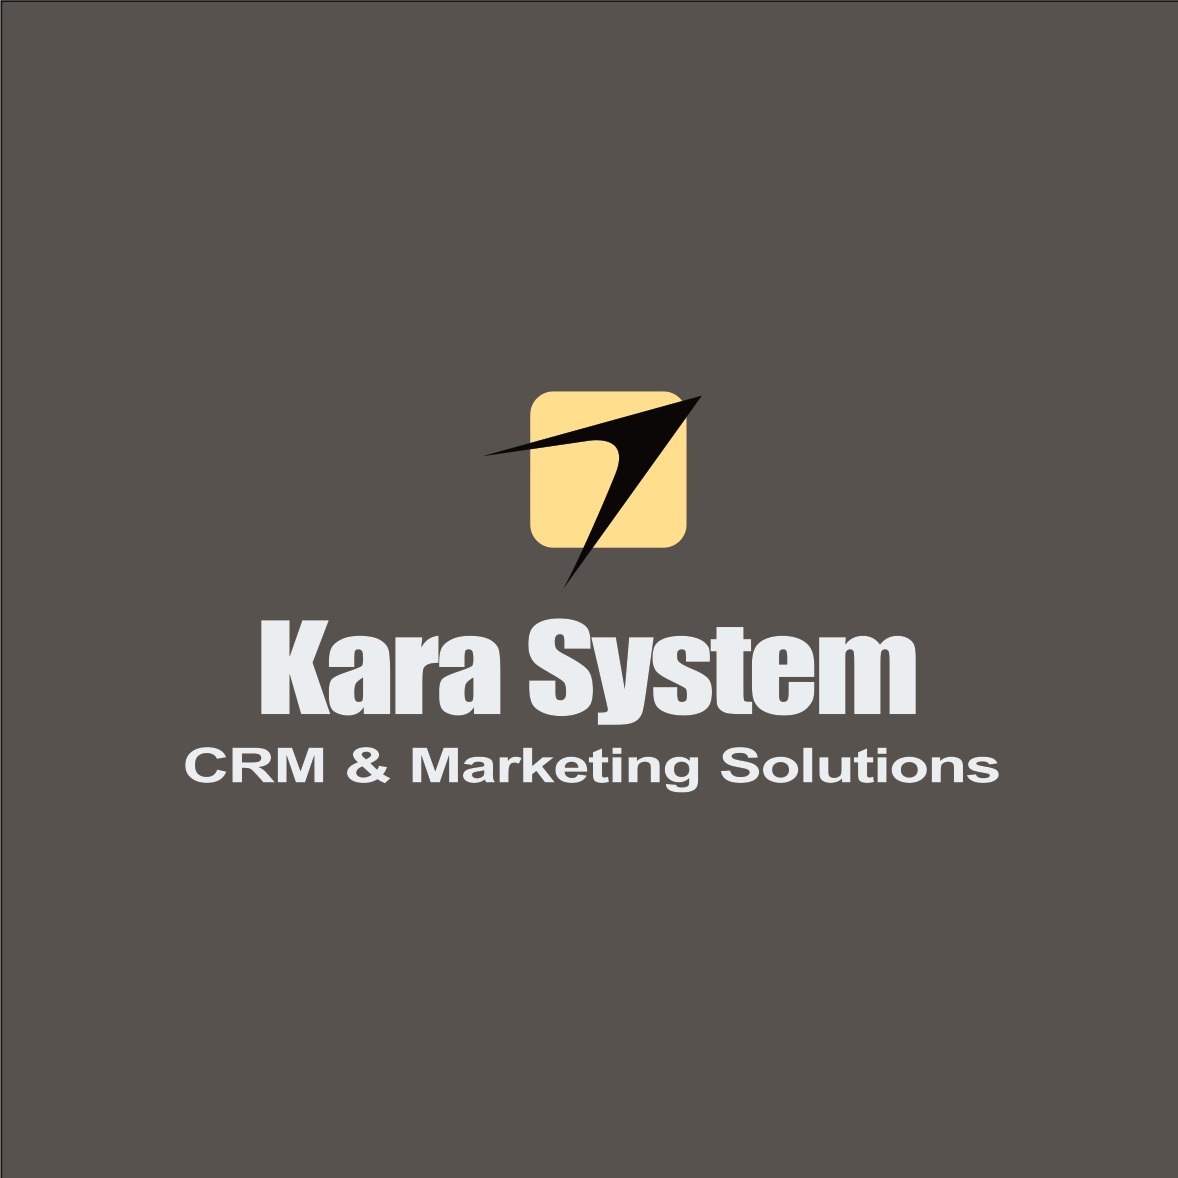 مشاوره بازاريابي و فروش، عيب يابي سيستم و بهينه سازي روندهاي تجاري، در بستر Microsoft CRM توسط شرکت کارا سيستم